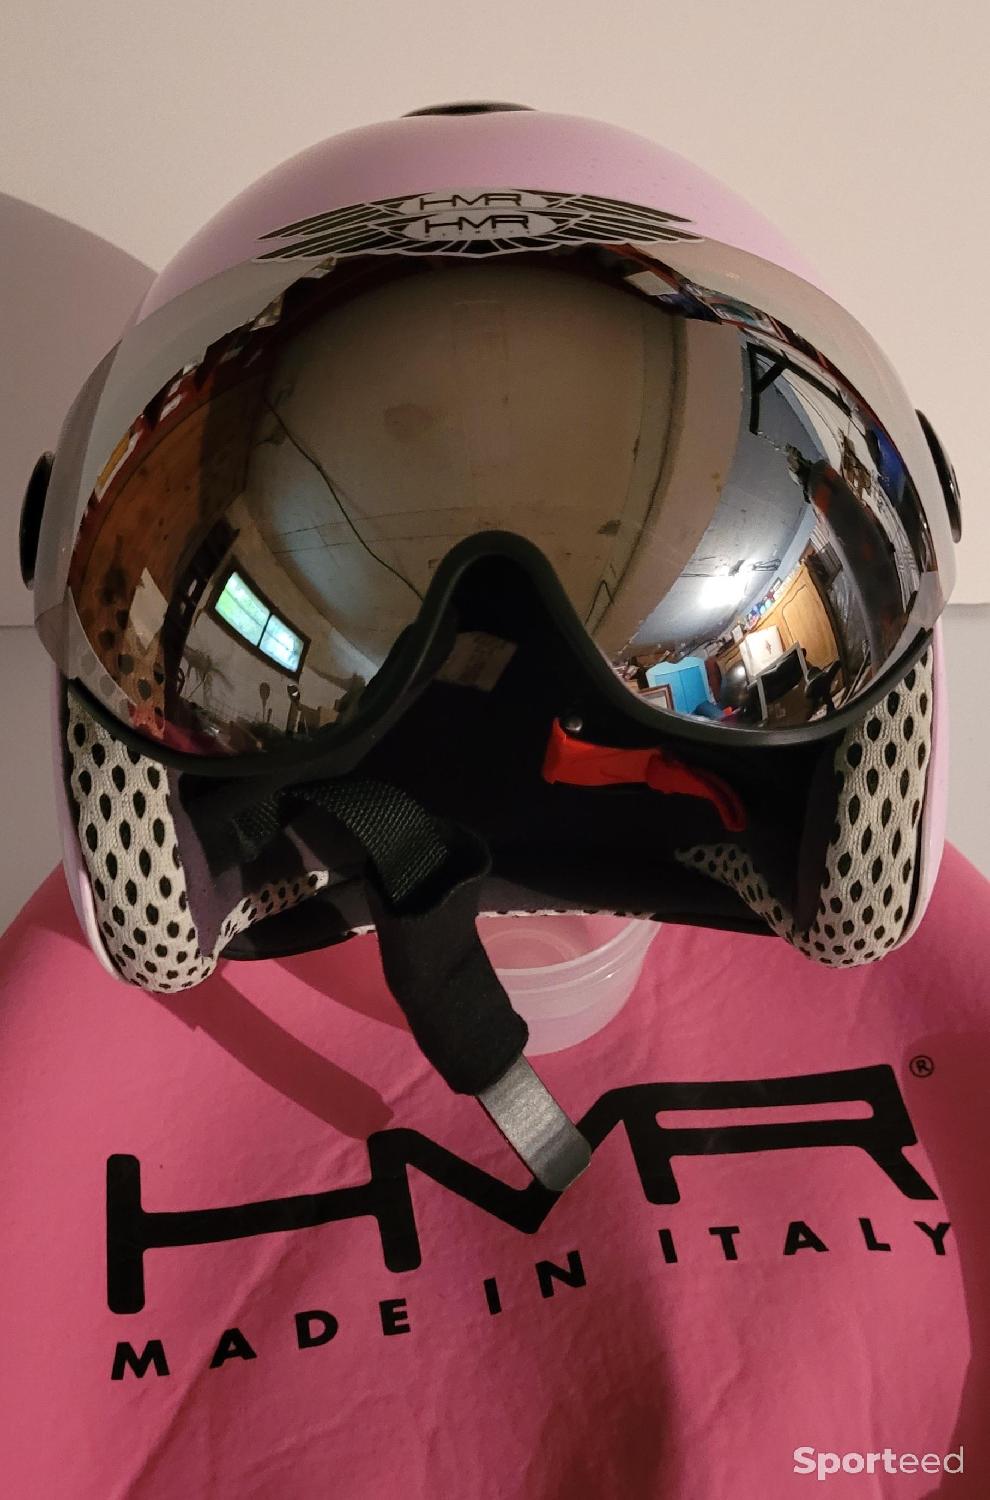 Casque ski HMR H2 Femme rose d'occasion : Femme